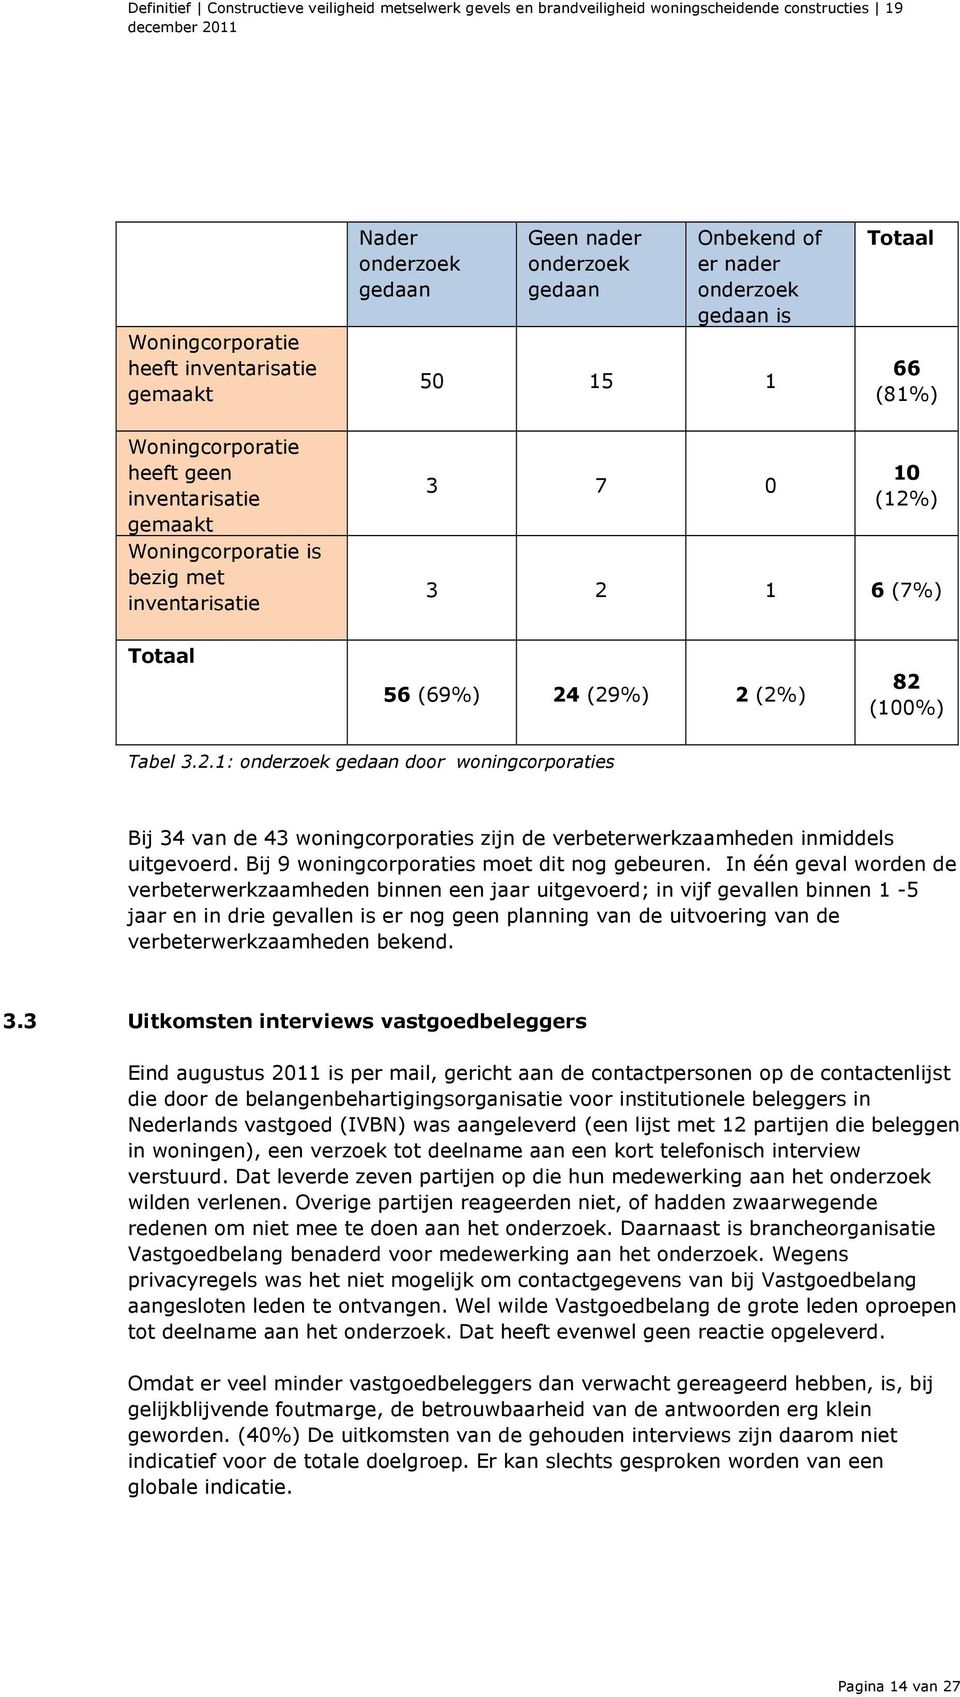 ) 3 2 1 6 (7%) Totaal 56 (69%) 24 (29%) 2 (2%) 82 (100%) Tabel 3.2.1: onderzoek gedaan door woningcorporaties Bij 34 van de 43 woningcorporaties zijn de verbeterwerkzaamheden inmiddels uitgevoerd.